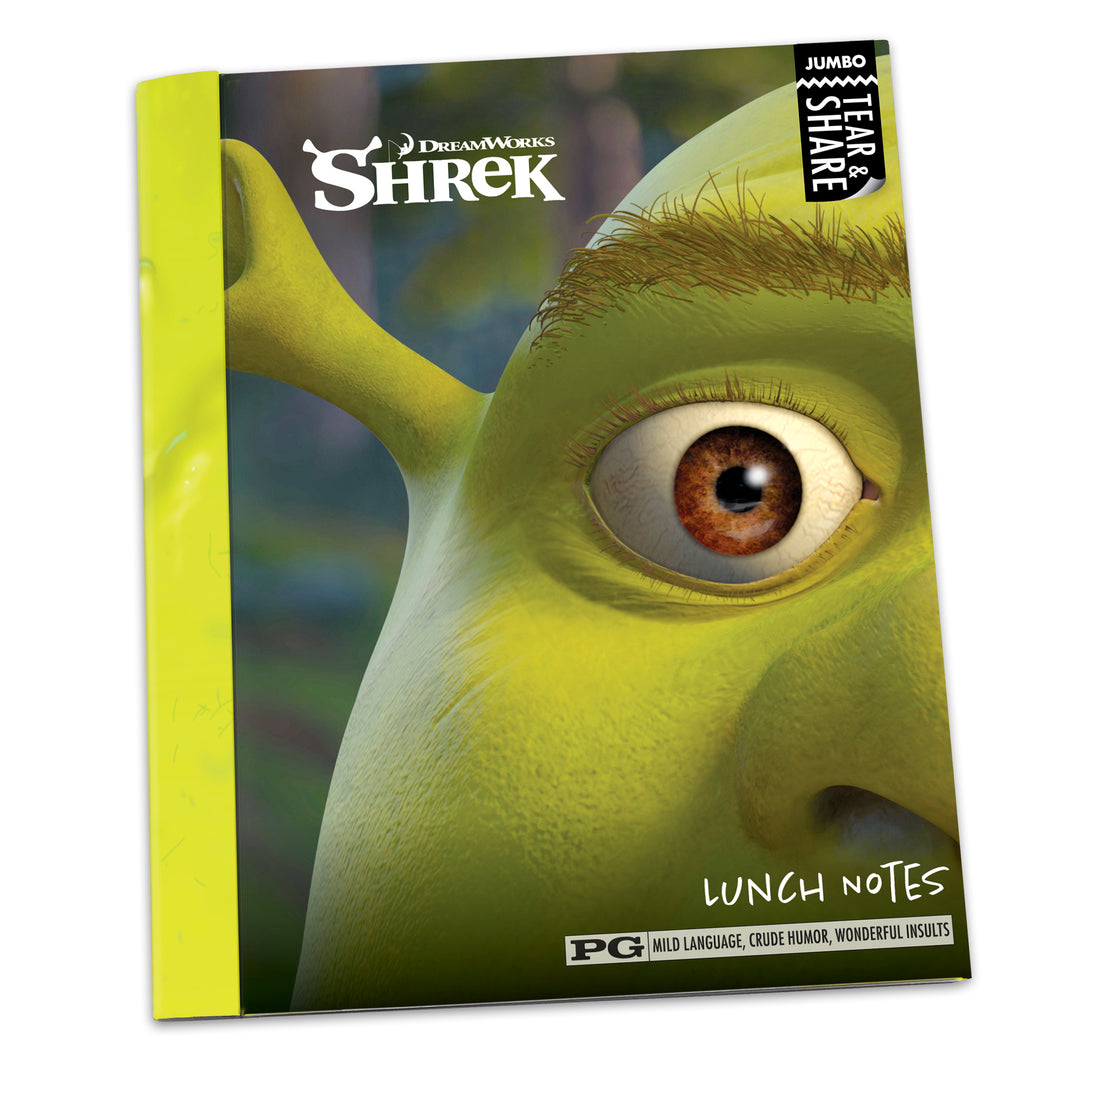 Jumbo Lunch Notes: Shrek - Pack of 6